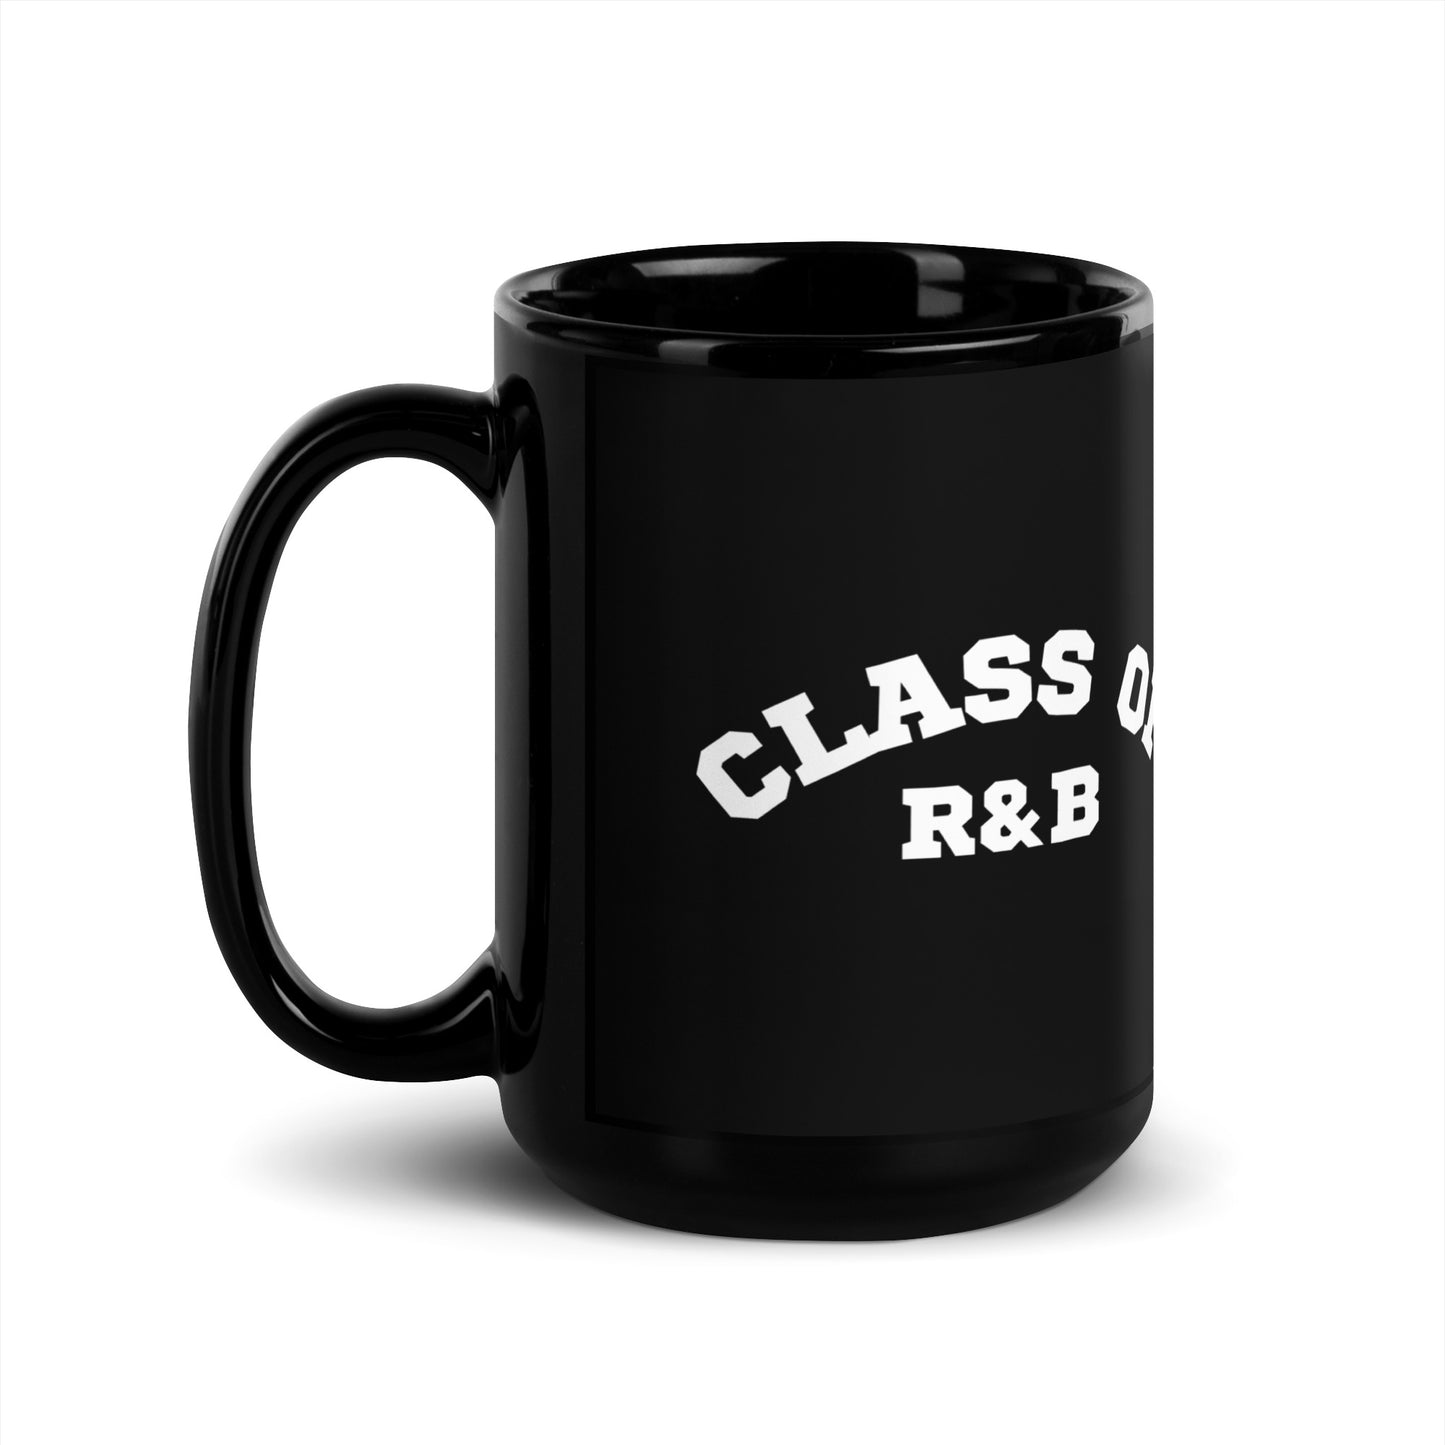 Class of R&B Black Glossy Mug